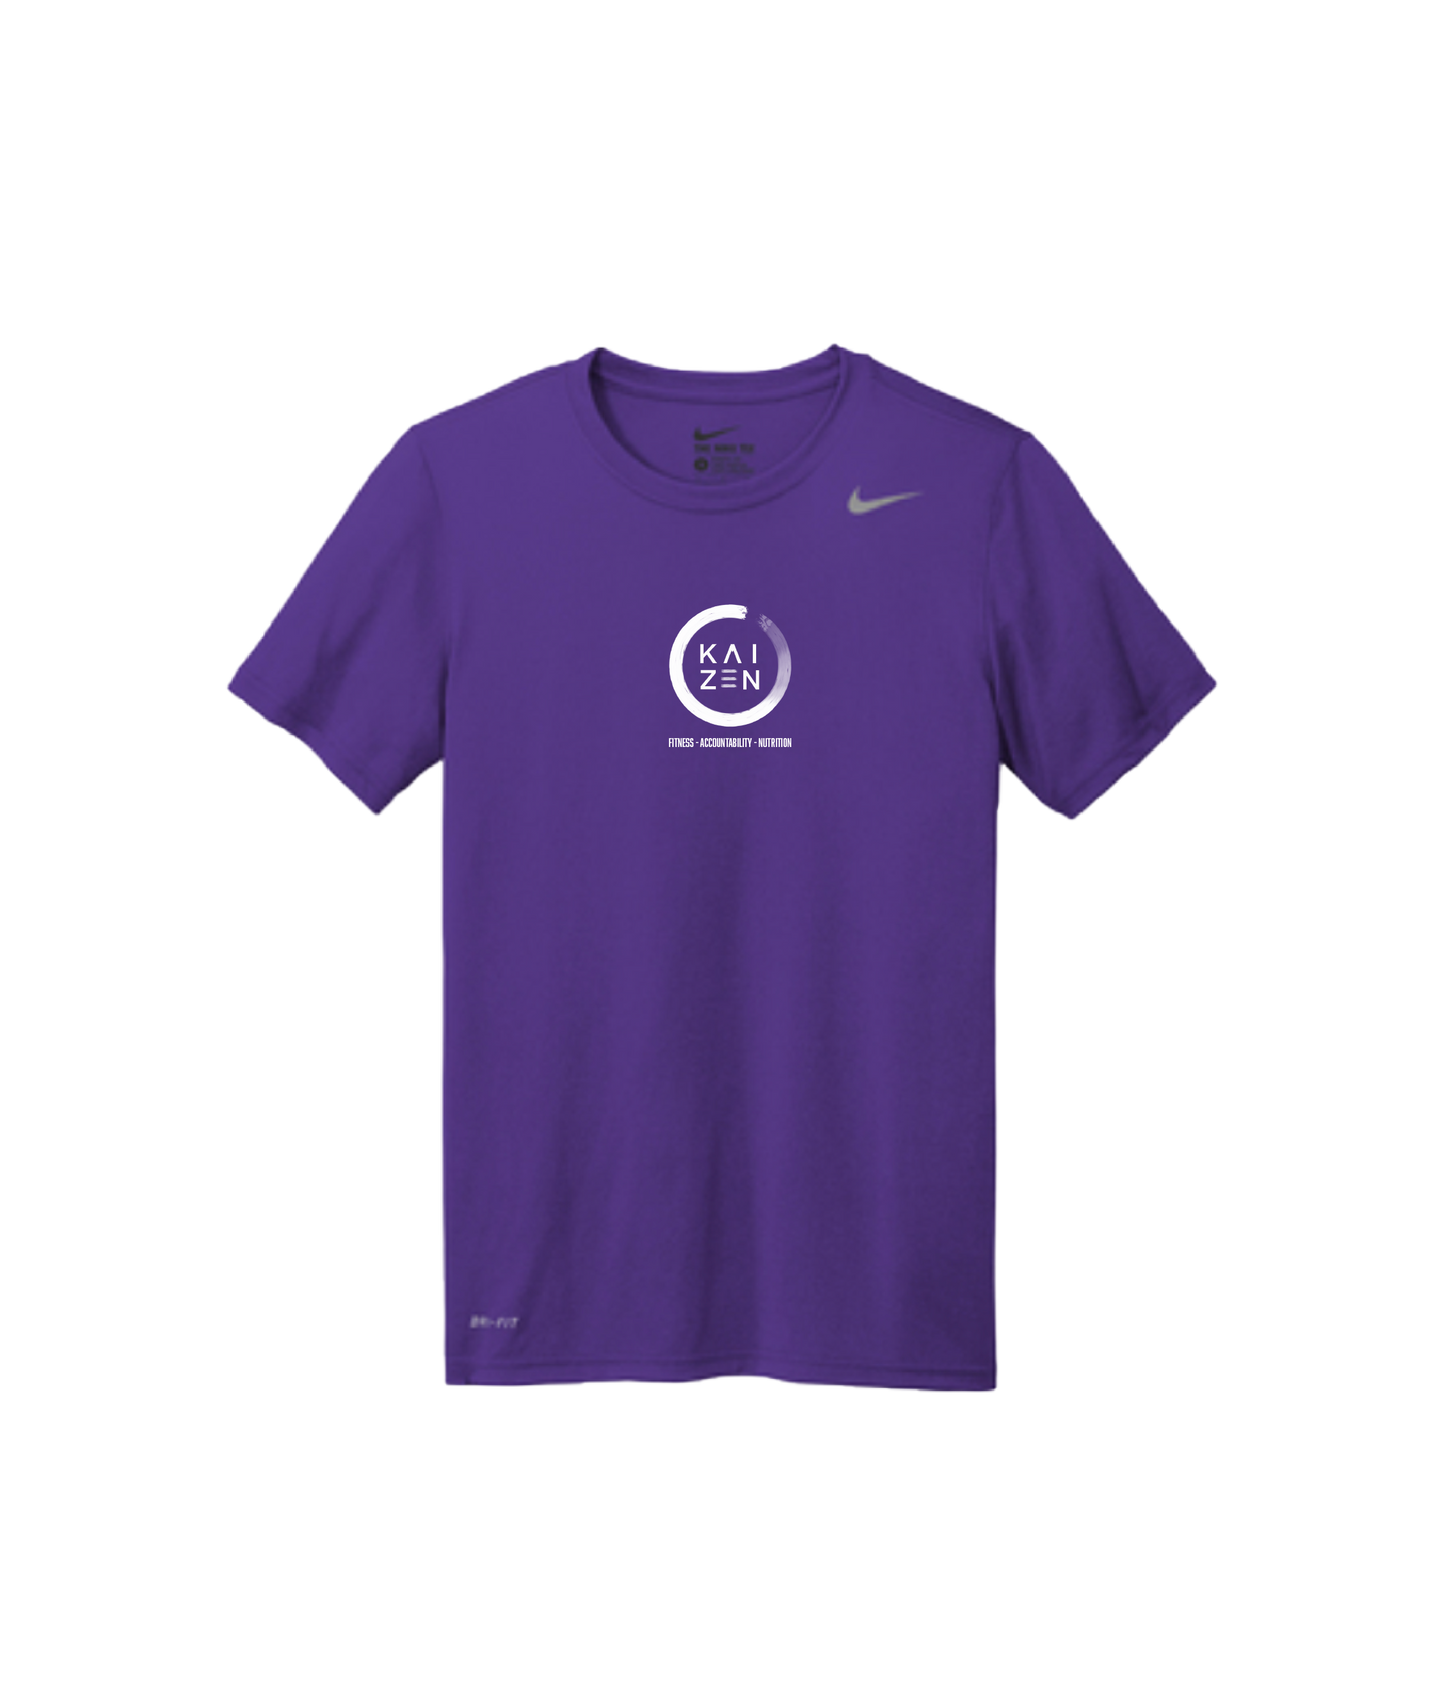 Kaizen logo shirt - Ladies Nike Team  rLegend tee